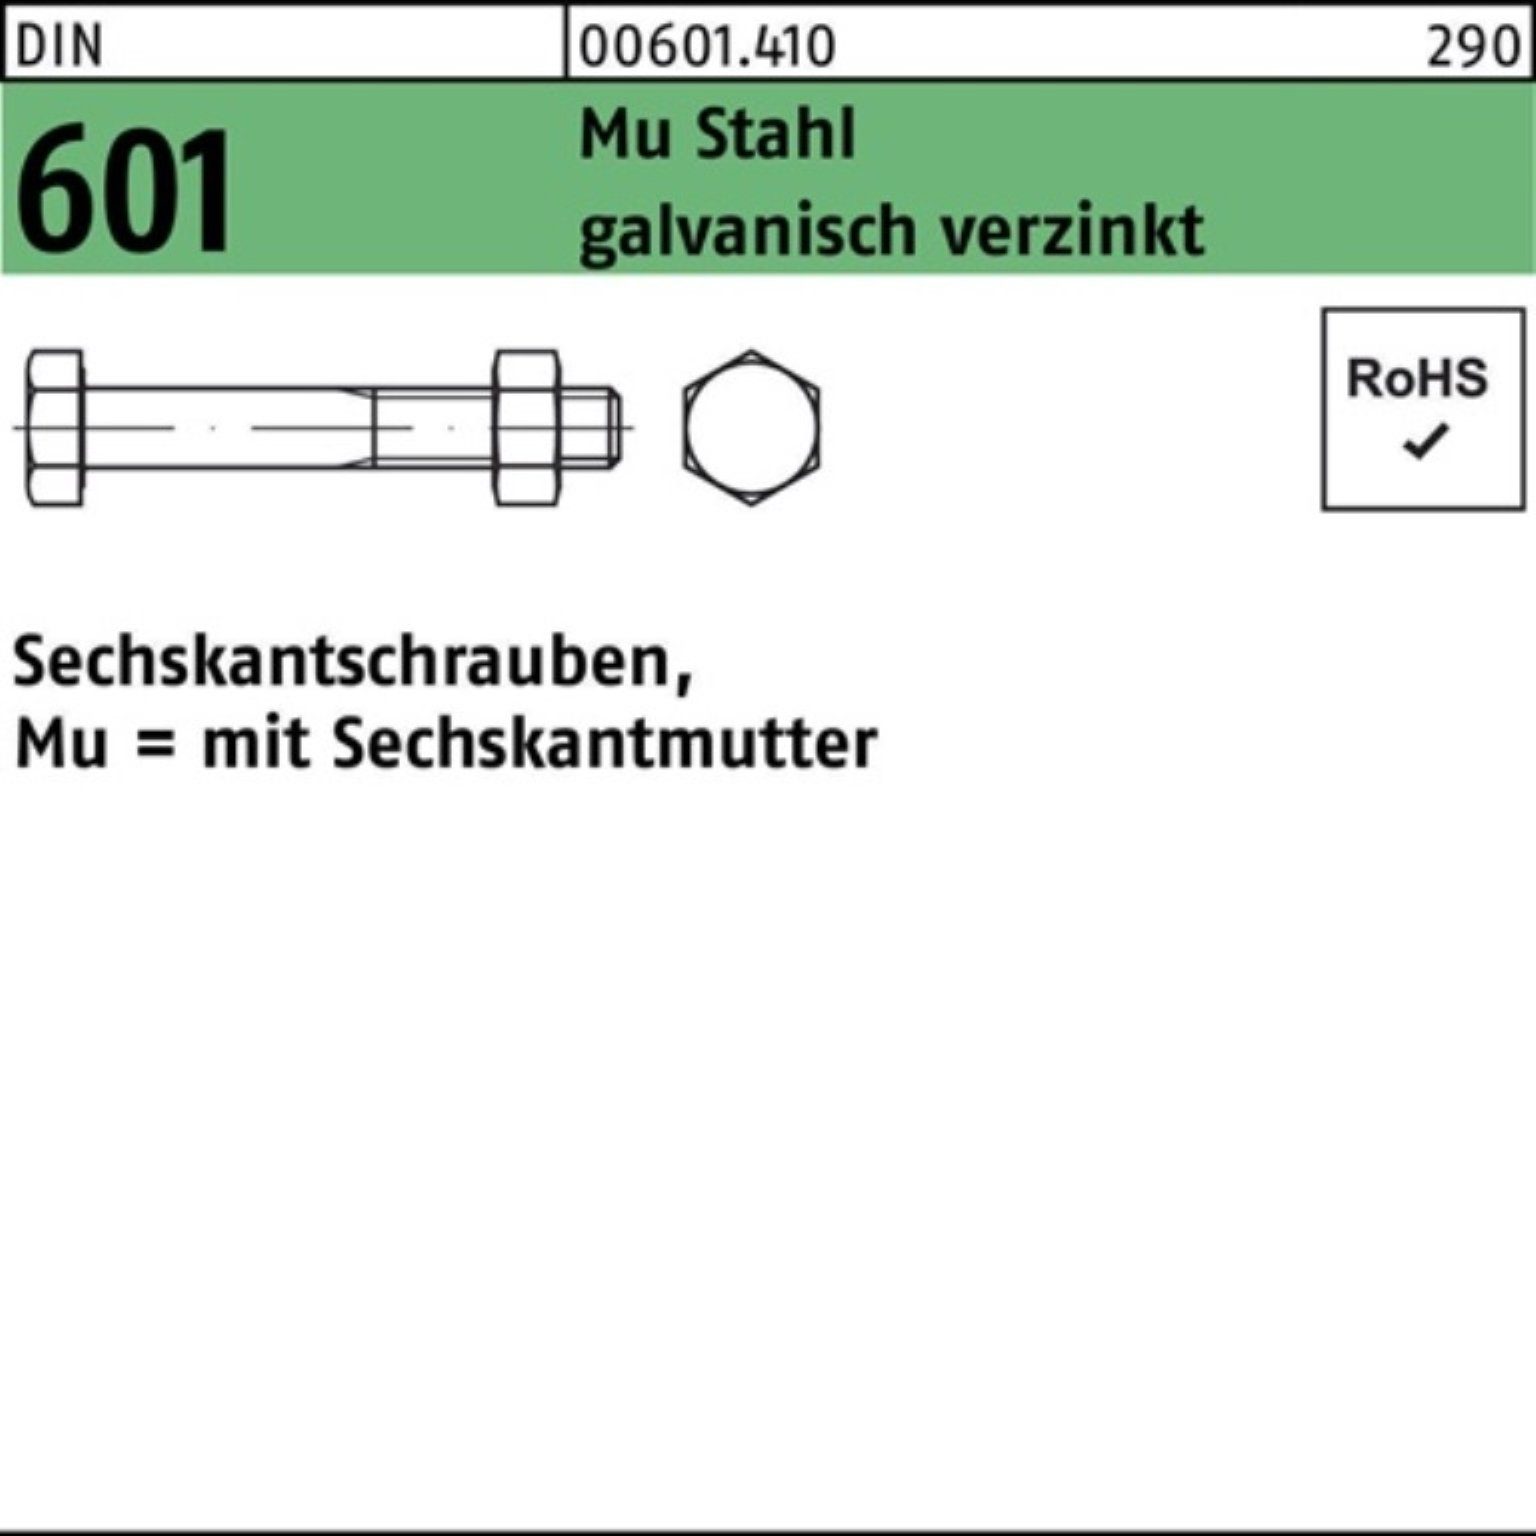 Reyher Sechskantmutter 200er Pack Sechskantschraube DIN 601 Sechskantmutter M8x70 Mu Stahl 4.